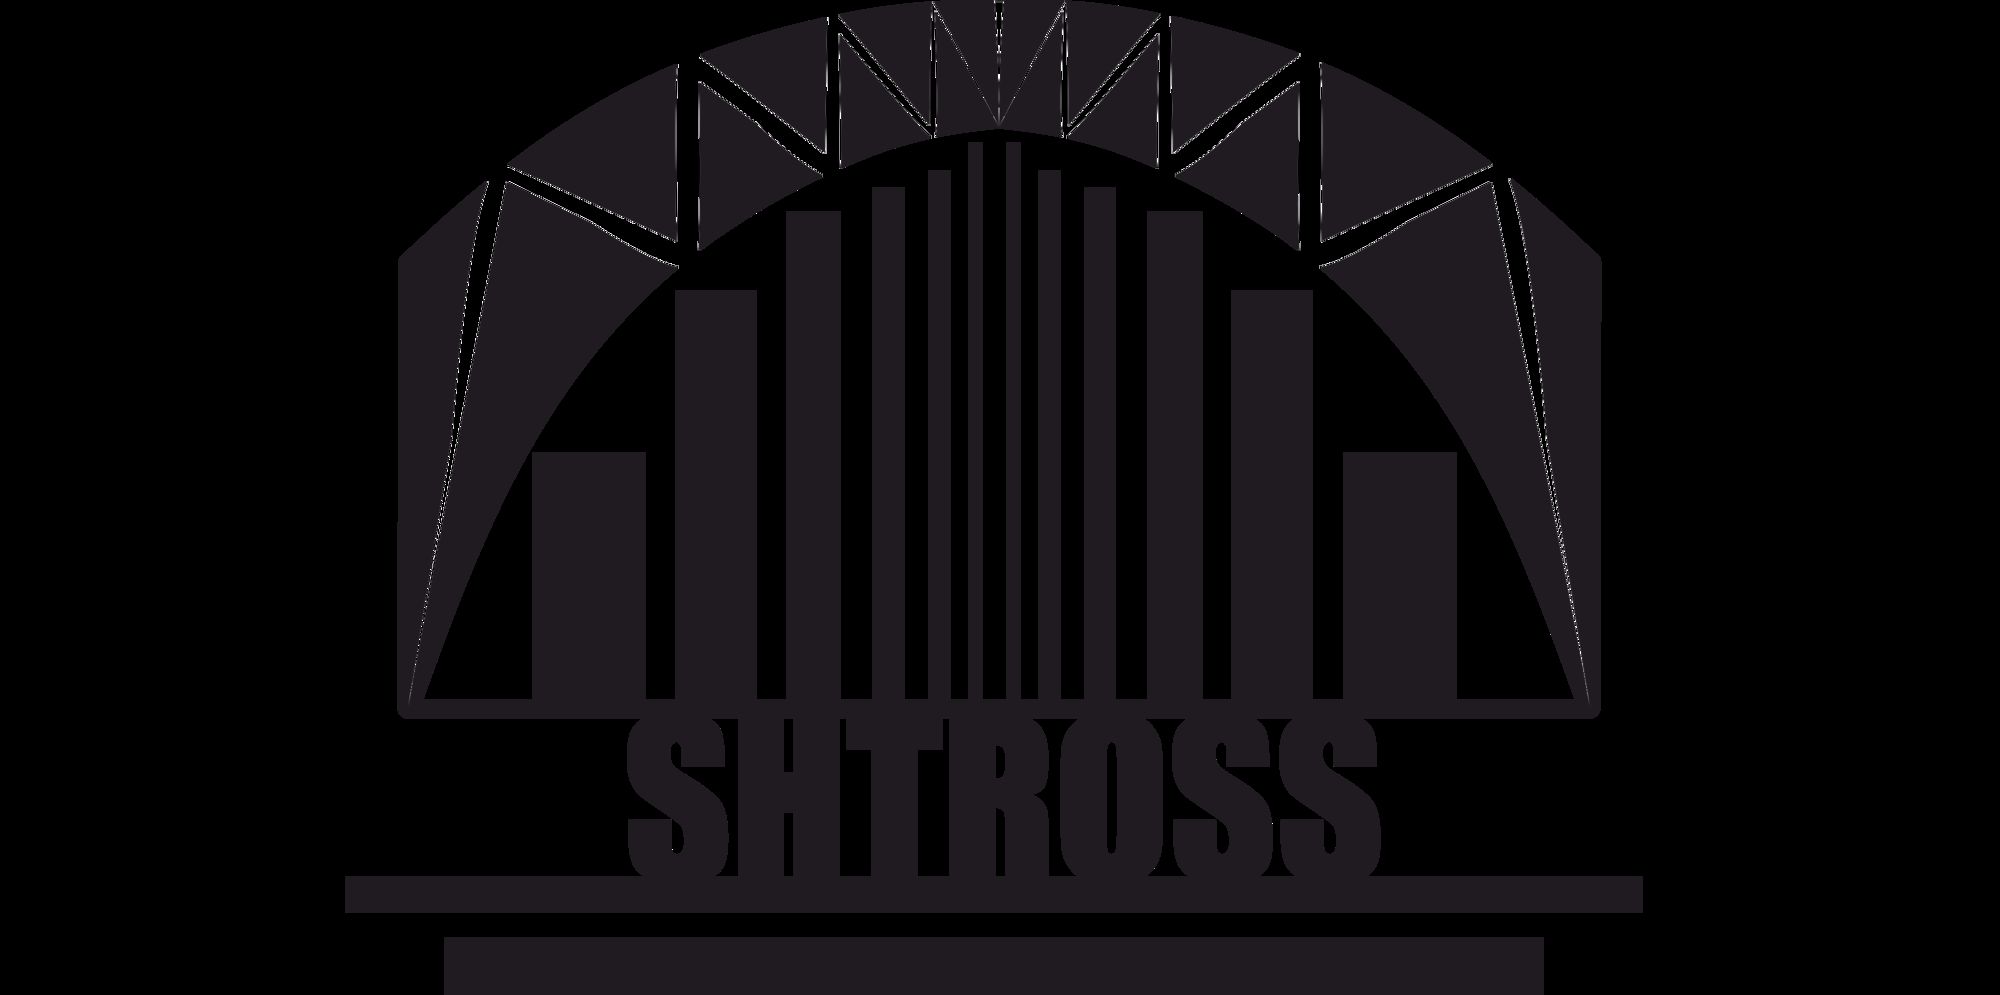 Логотип для строительной компании SHTROSS - дизайнер TrevorSchwert